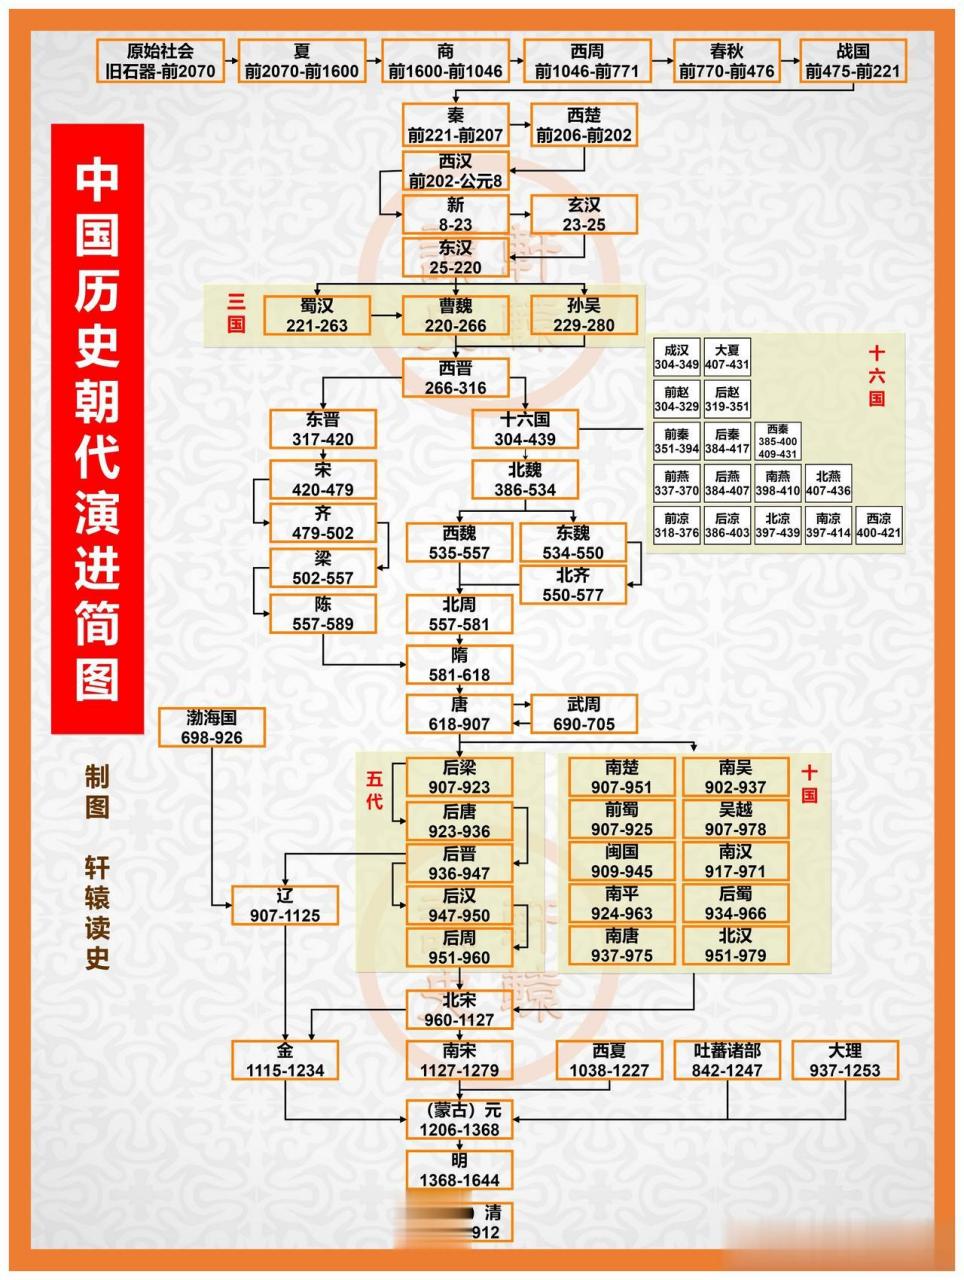 中国历史朝代更迭及历代帝王谱系图【下篇】